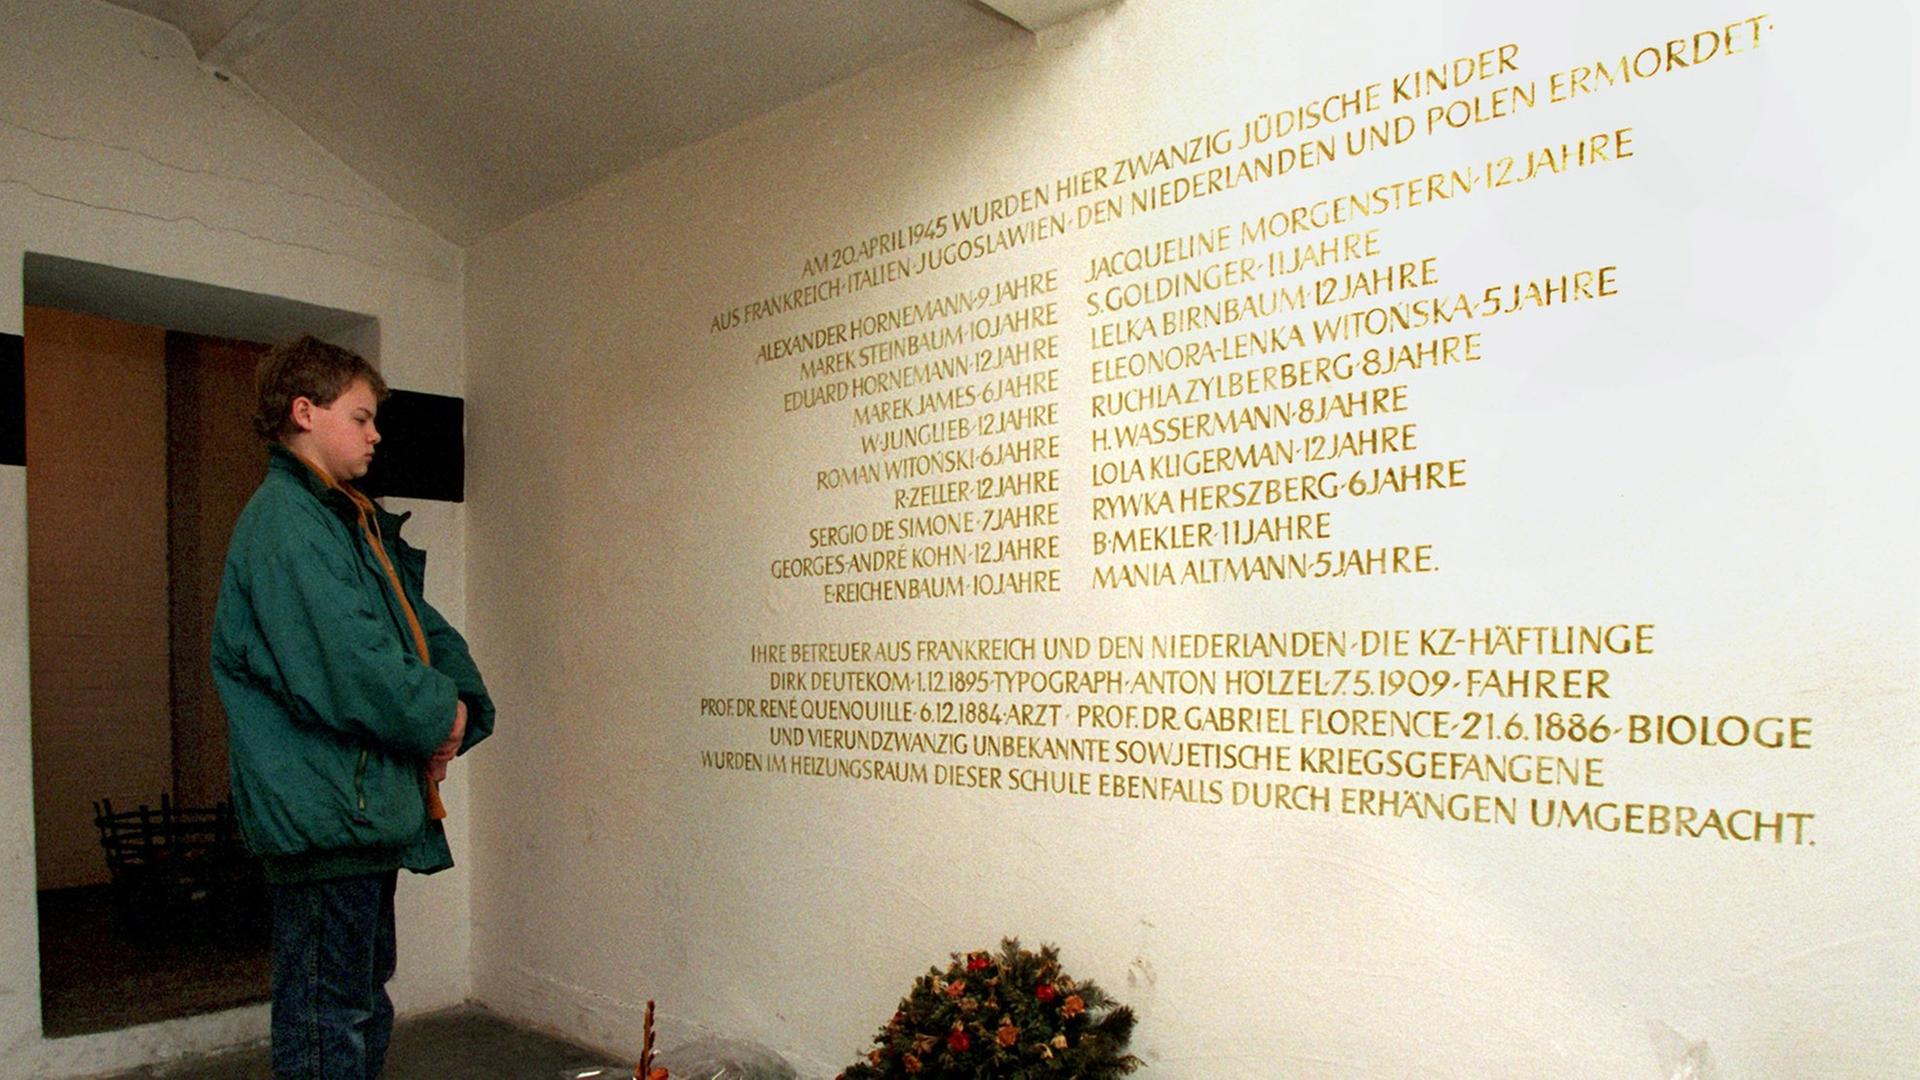 Gedenktafel in einer Hamburger Schule, die an die Ermordung von 20 jüdischen Kindern erinnert.